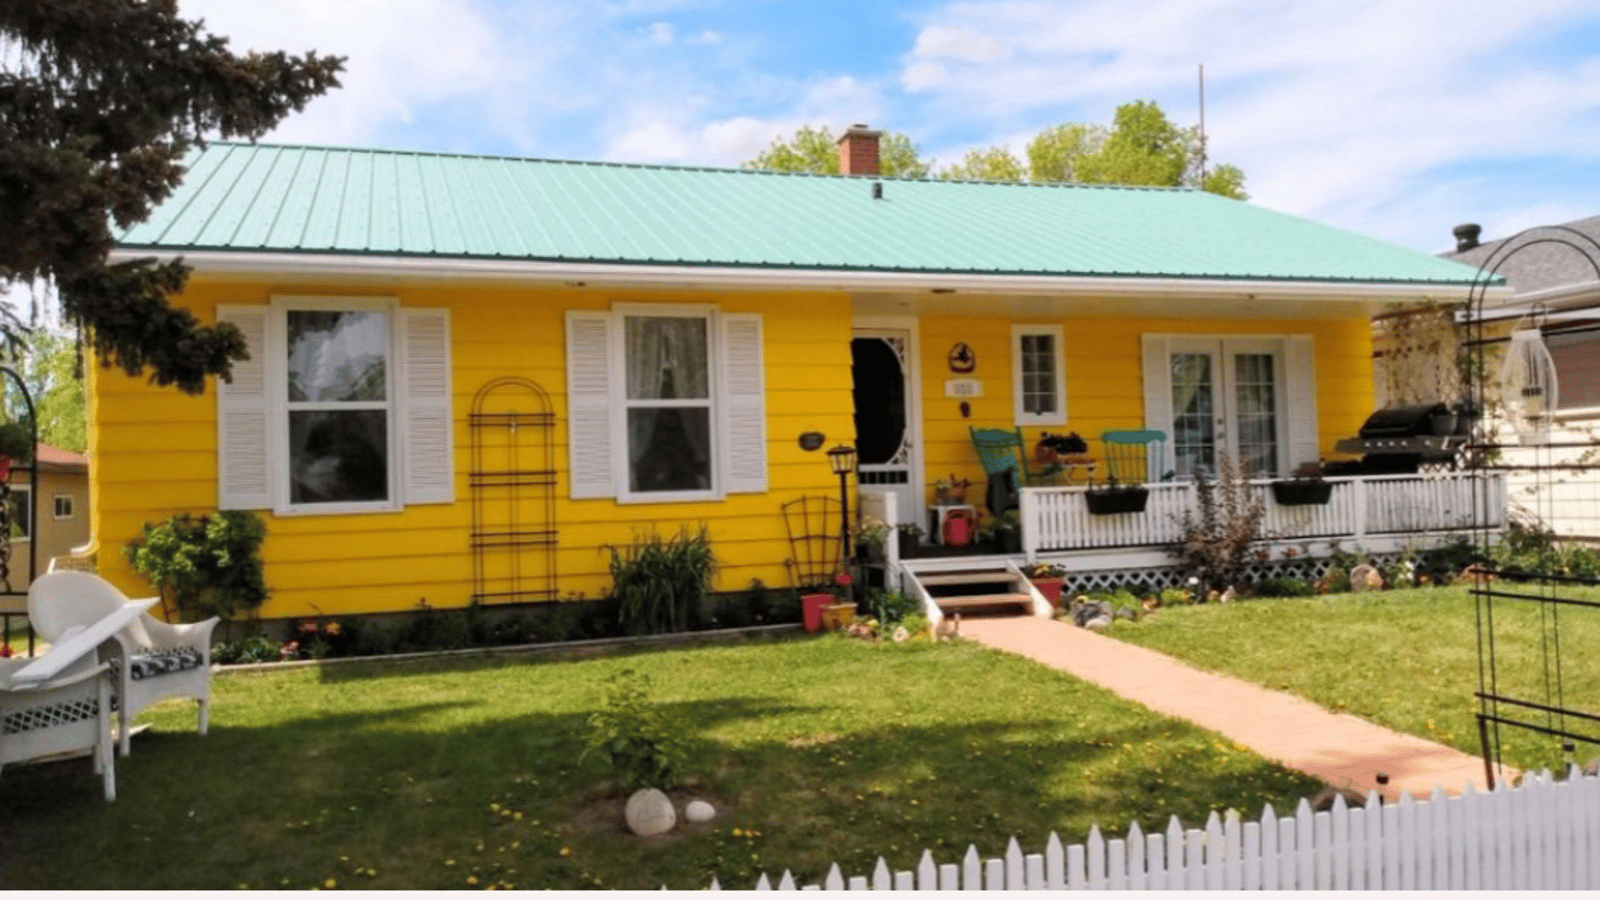 Ils emmerdent leurs voisins dans une ville « beige » en peinturant leur maison d'une couleur éclatante